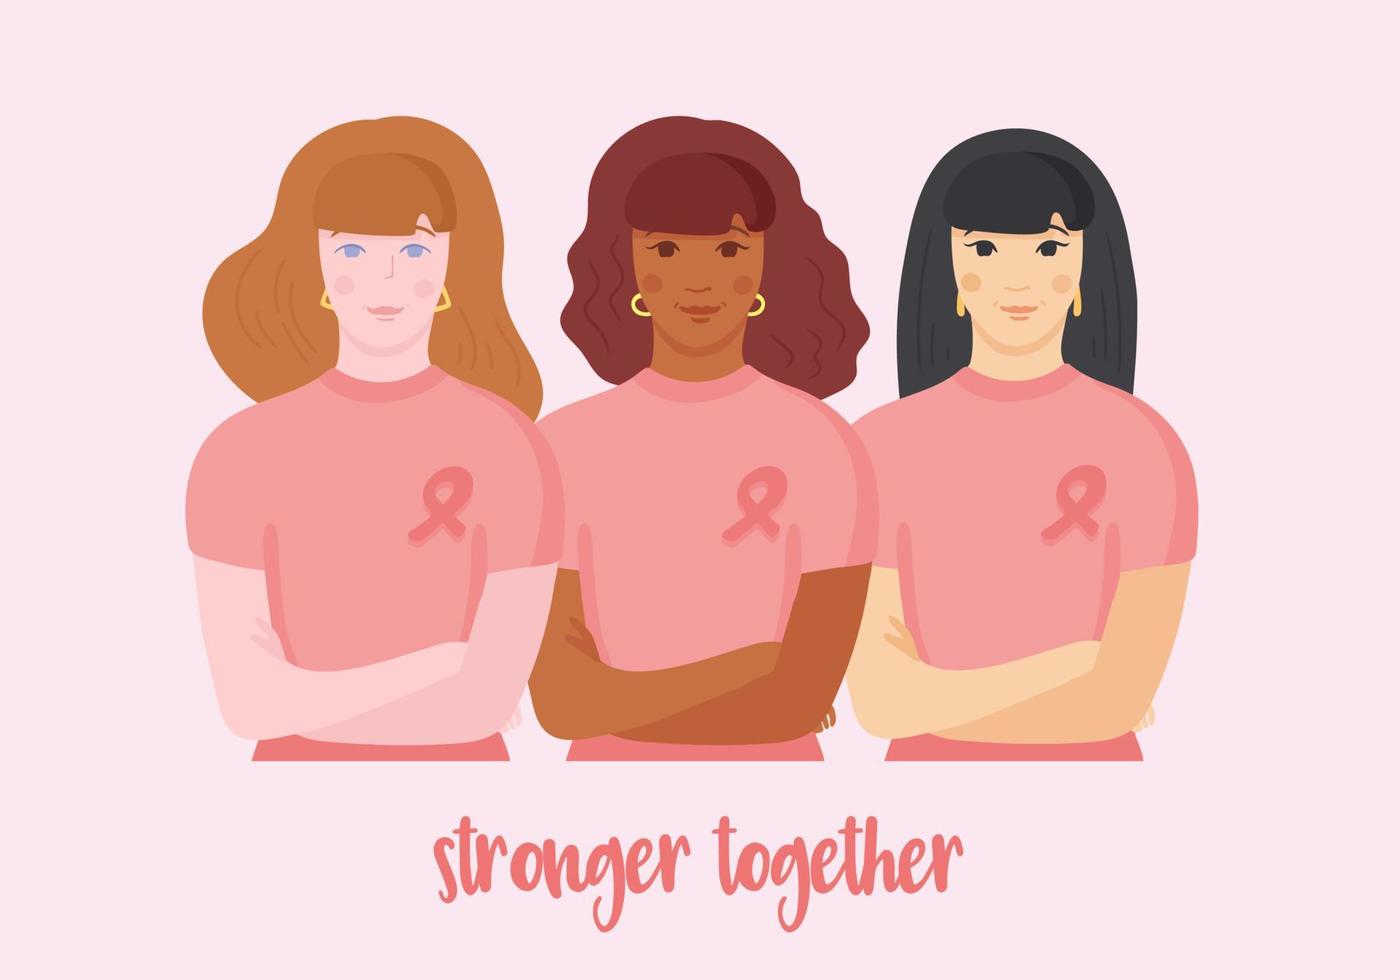 aziatische, afro-amerikaanse en blanke vrouwen in wit t-shirt met roze lint op de borst, handen gekruist, samen staan ter ondersteuning van strijders. vector